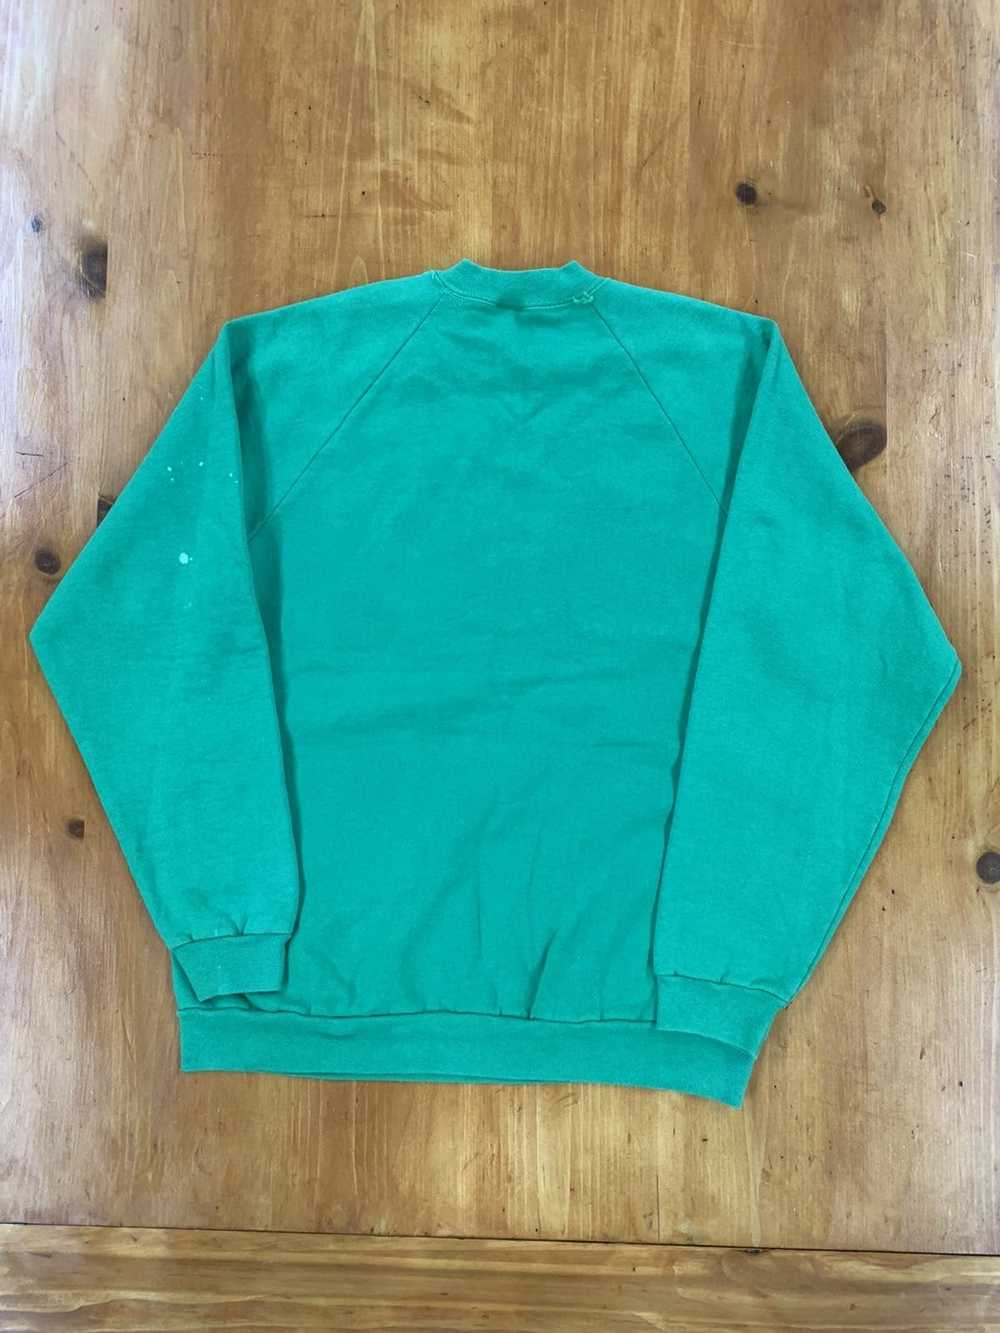 Vintage Vintage 1990s Ireland Sweatshirt Crewneck - image 6